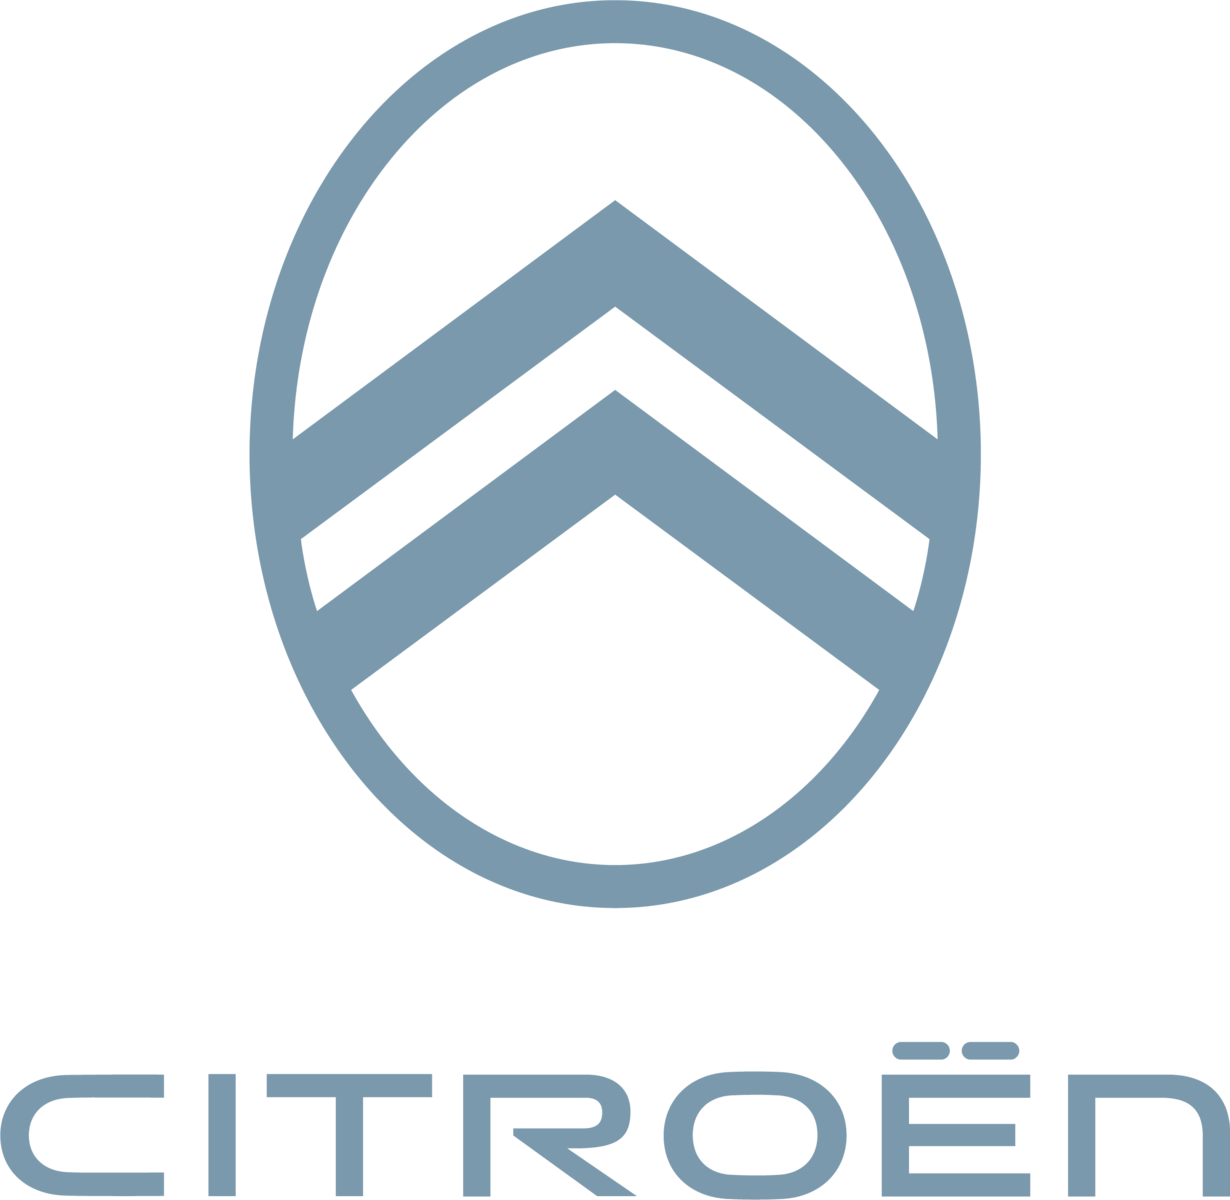 Citroën miniature - Motors Miniatures